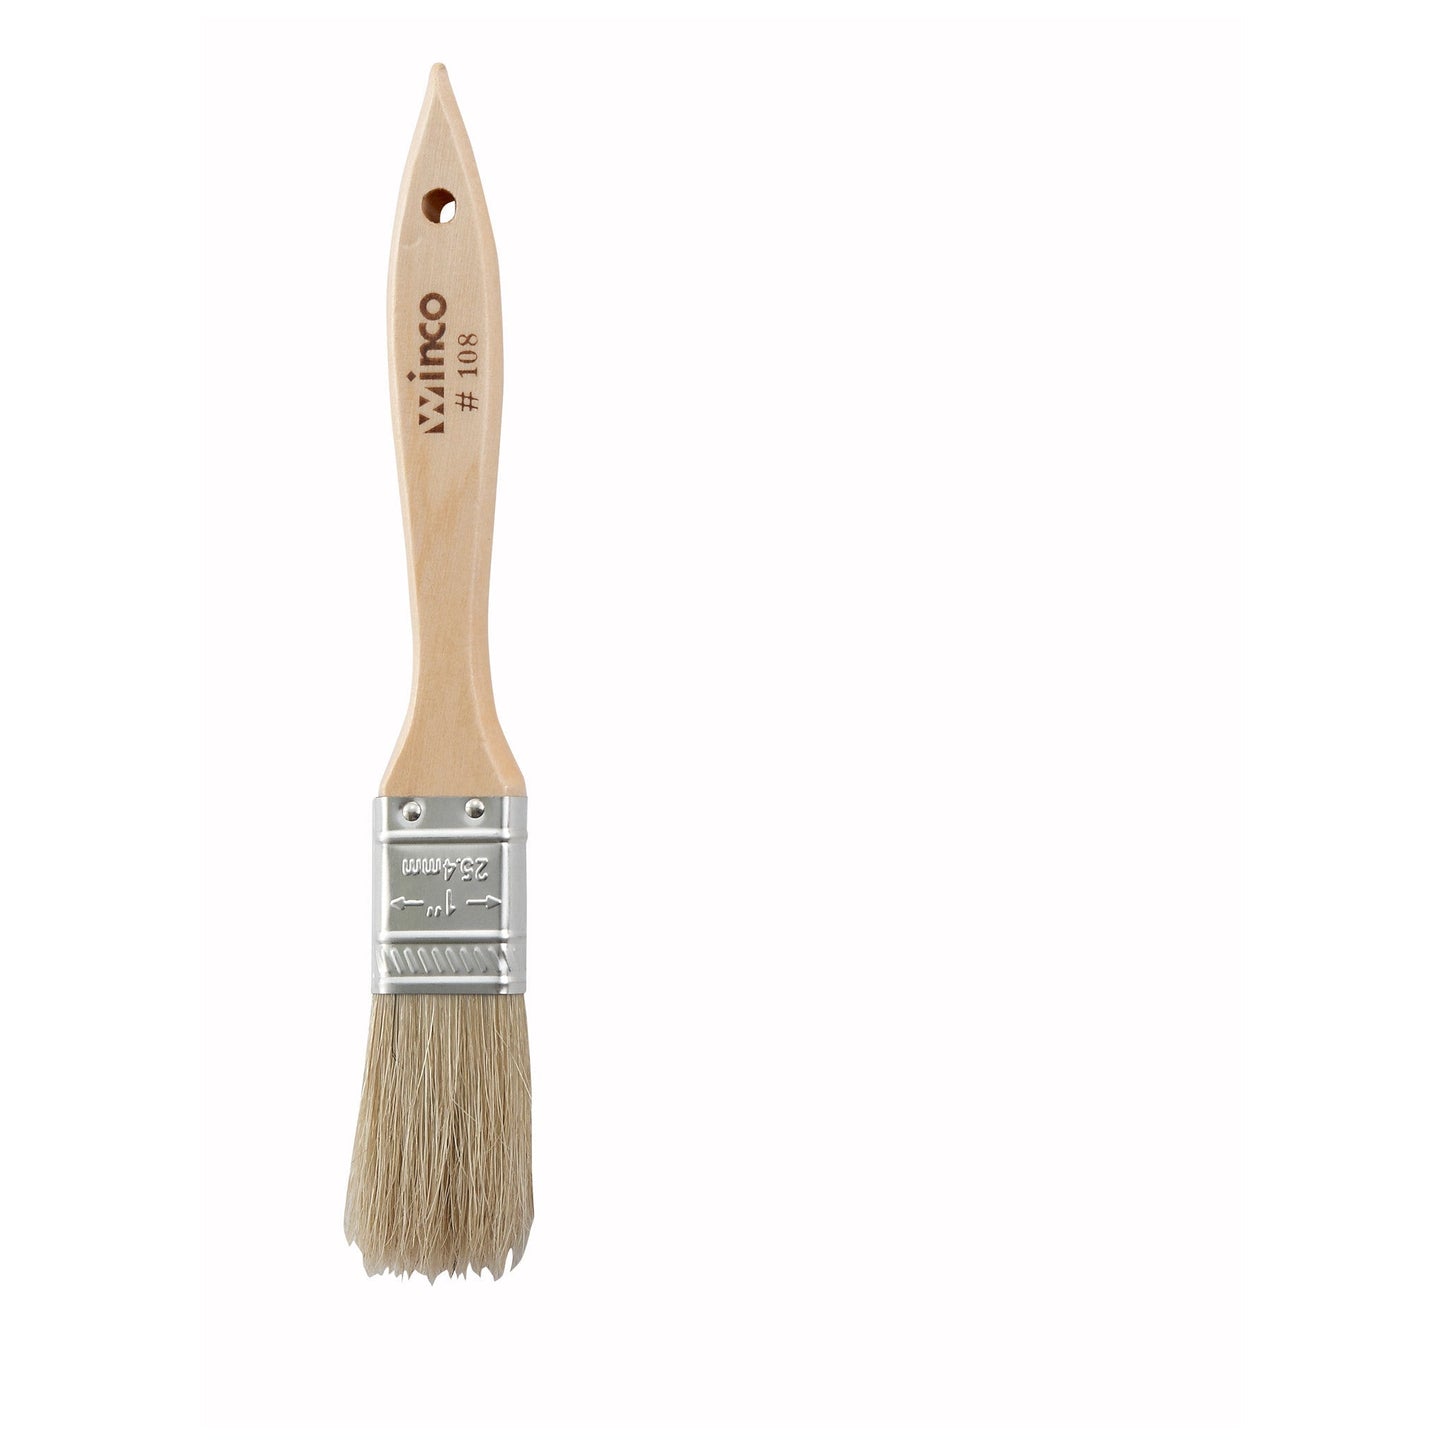 Pastry Brush/Basting Brush - Natural Boar Hair (Metal Ferrule) - Flat - 1"